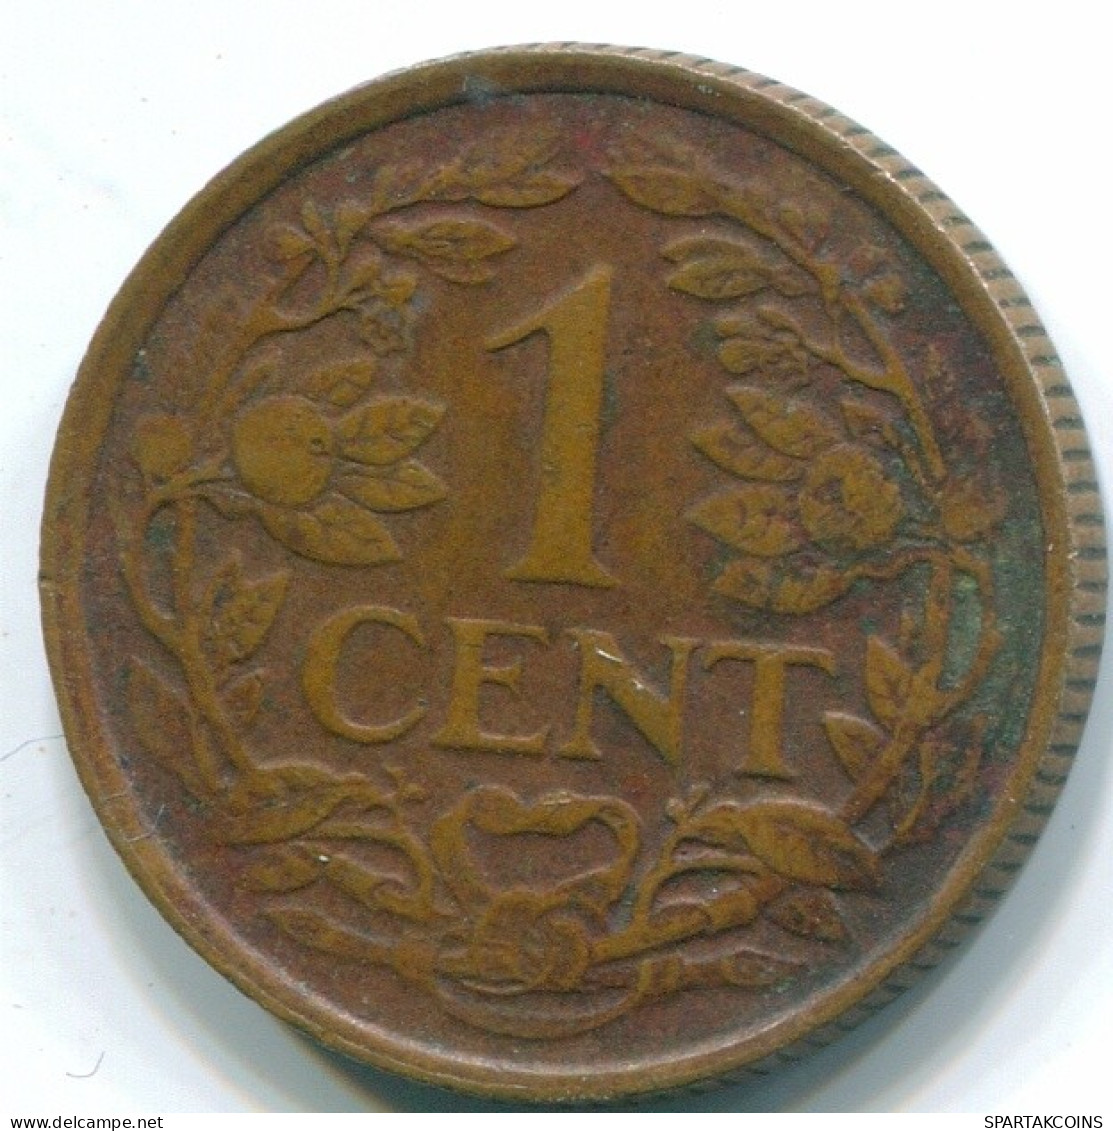 1 CENT 1959 NETHERLANDS ANTILLES Bronze Fish Colonial Coin #S11048.U.A - Antilles Néerlandaises